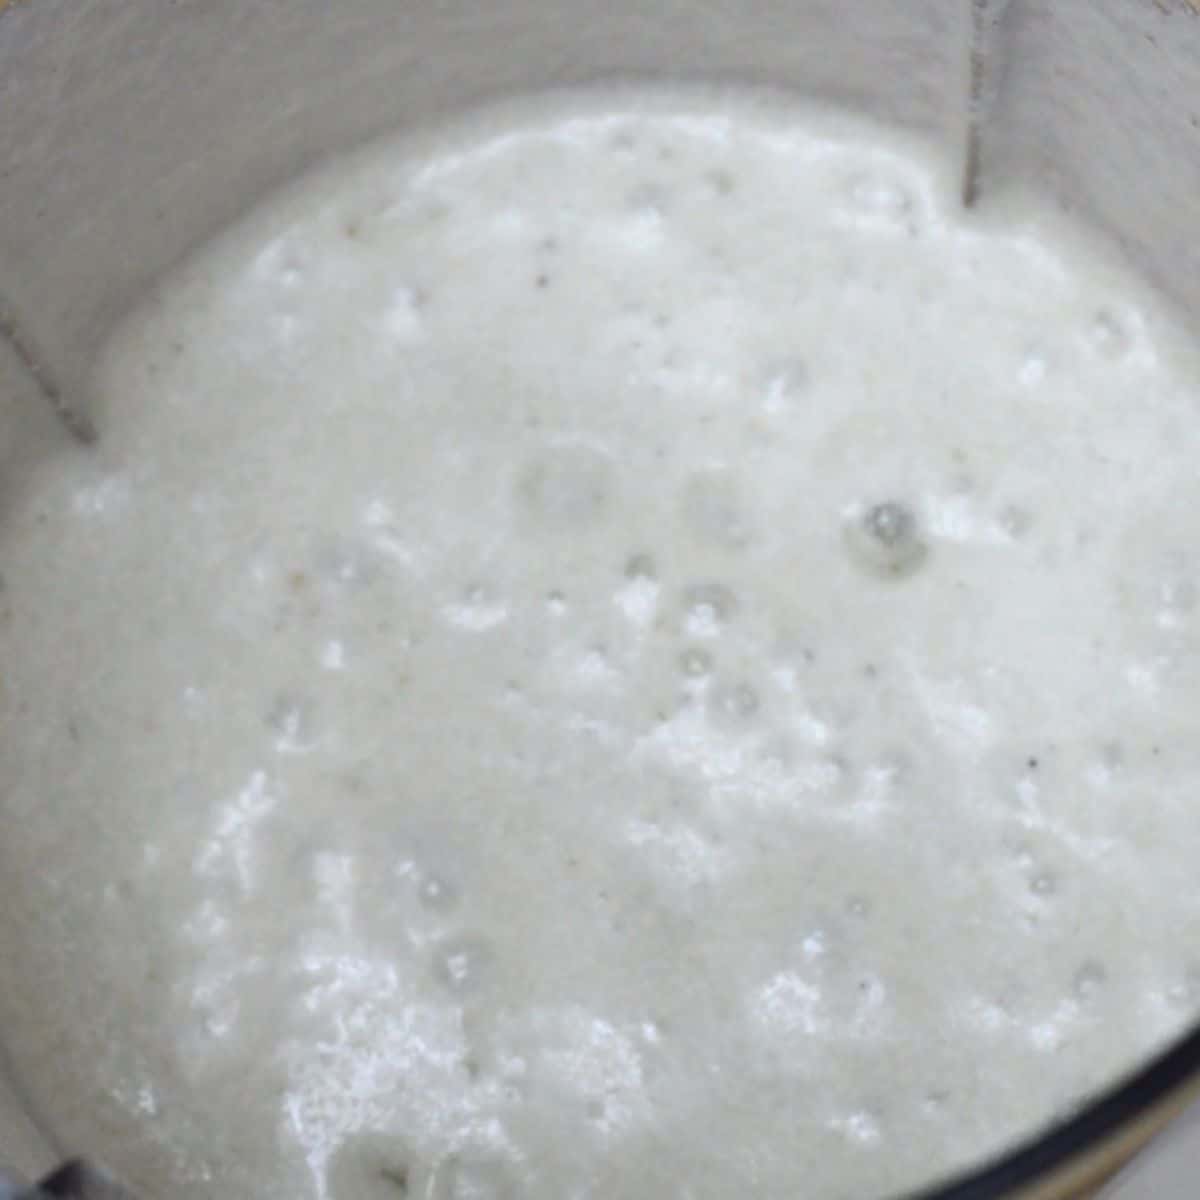 blended mixture in a blender jar.